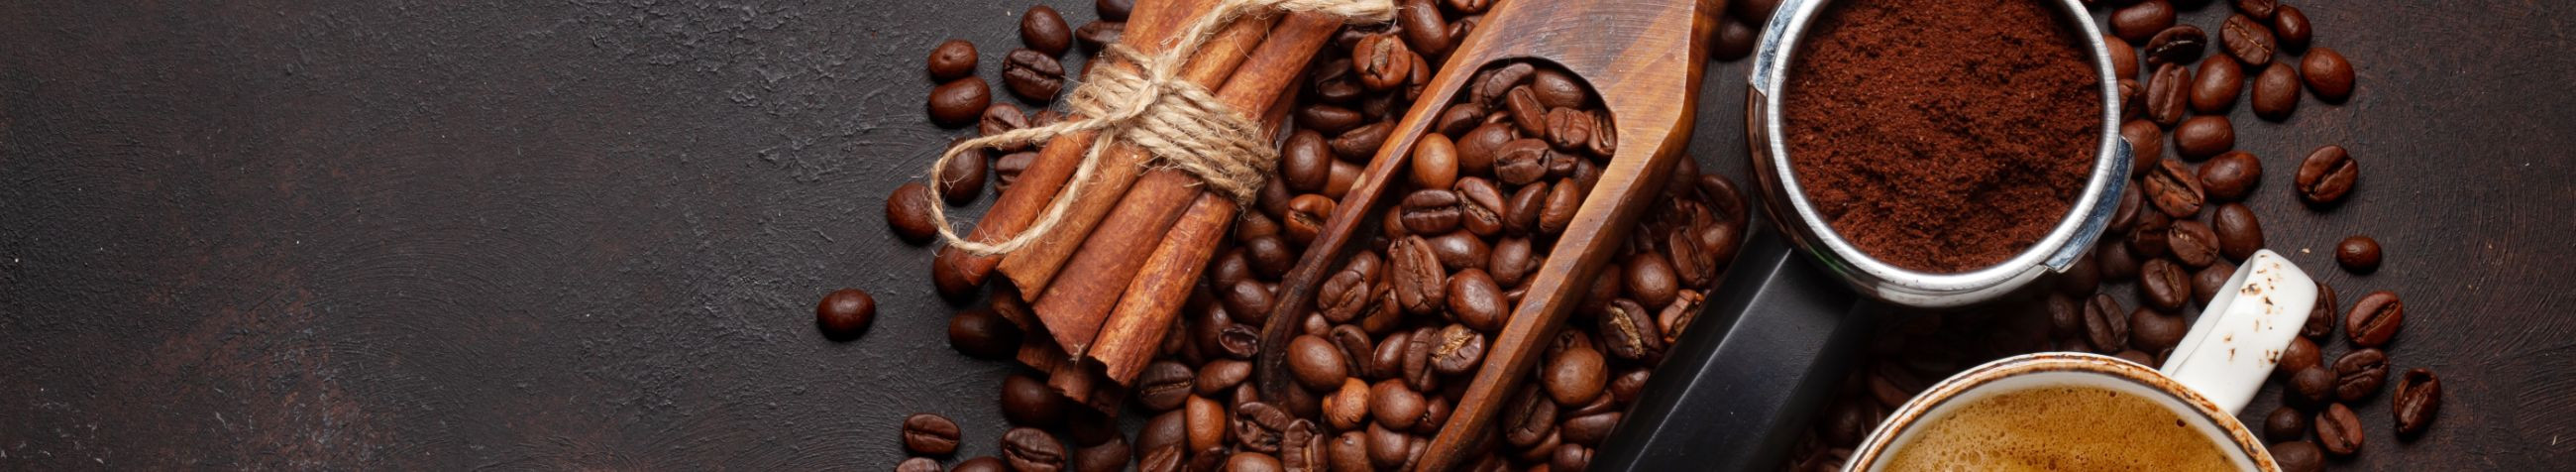 Oleme Eesti juhtiv espressoettevõte, pakkudes kvaliteetseid kohvitooteid ja -lahendusi HORECA sektorile, kontoritele ja üritustele.